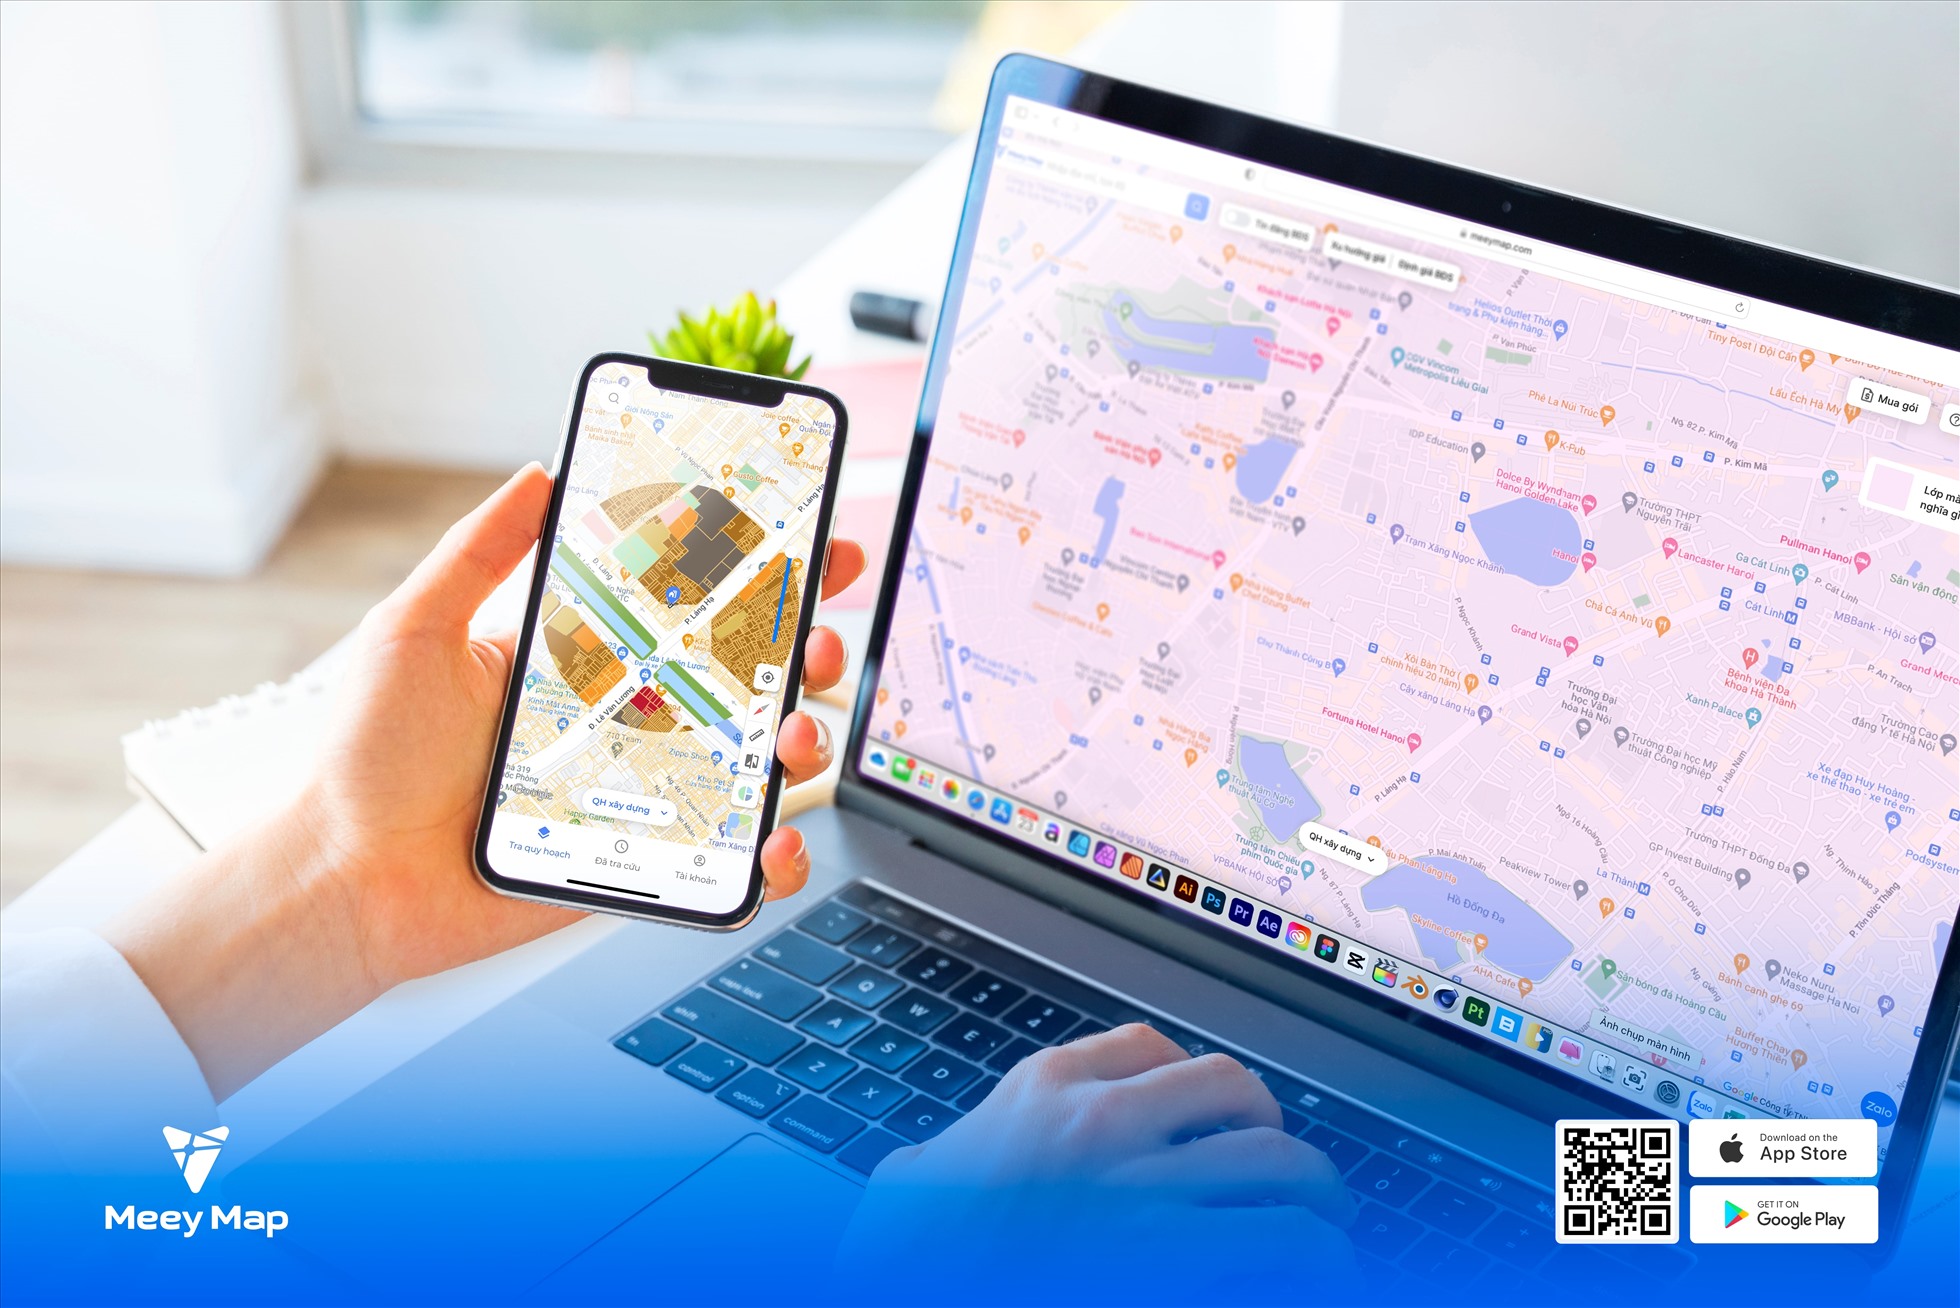 Sử dụng Meey Map tra cứu bản đồ hành chính Quảng Ninh